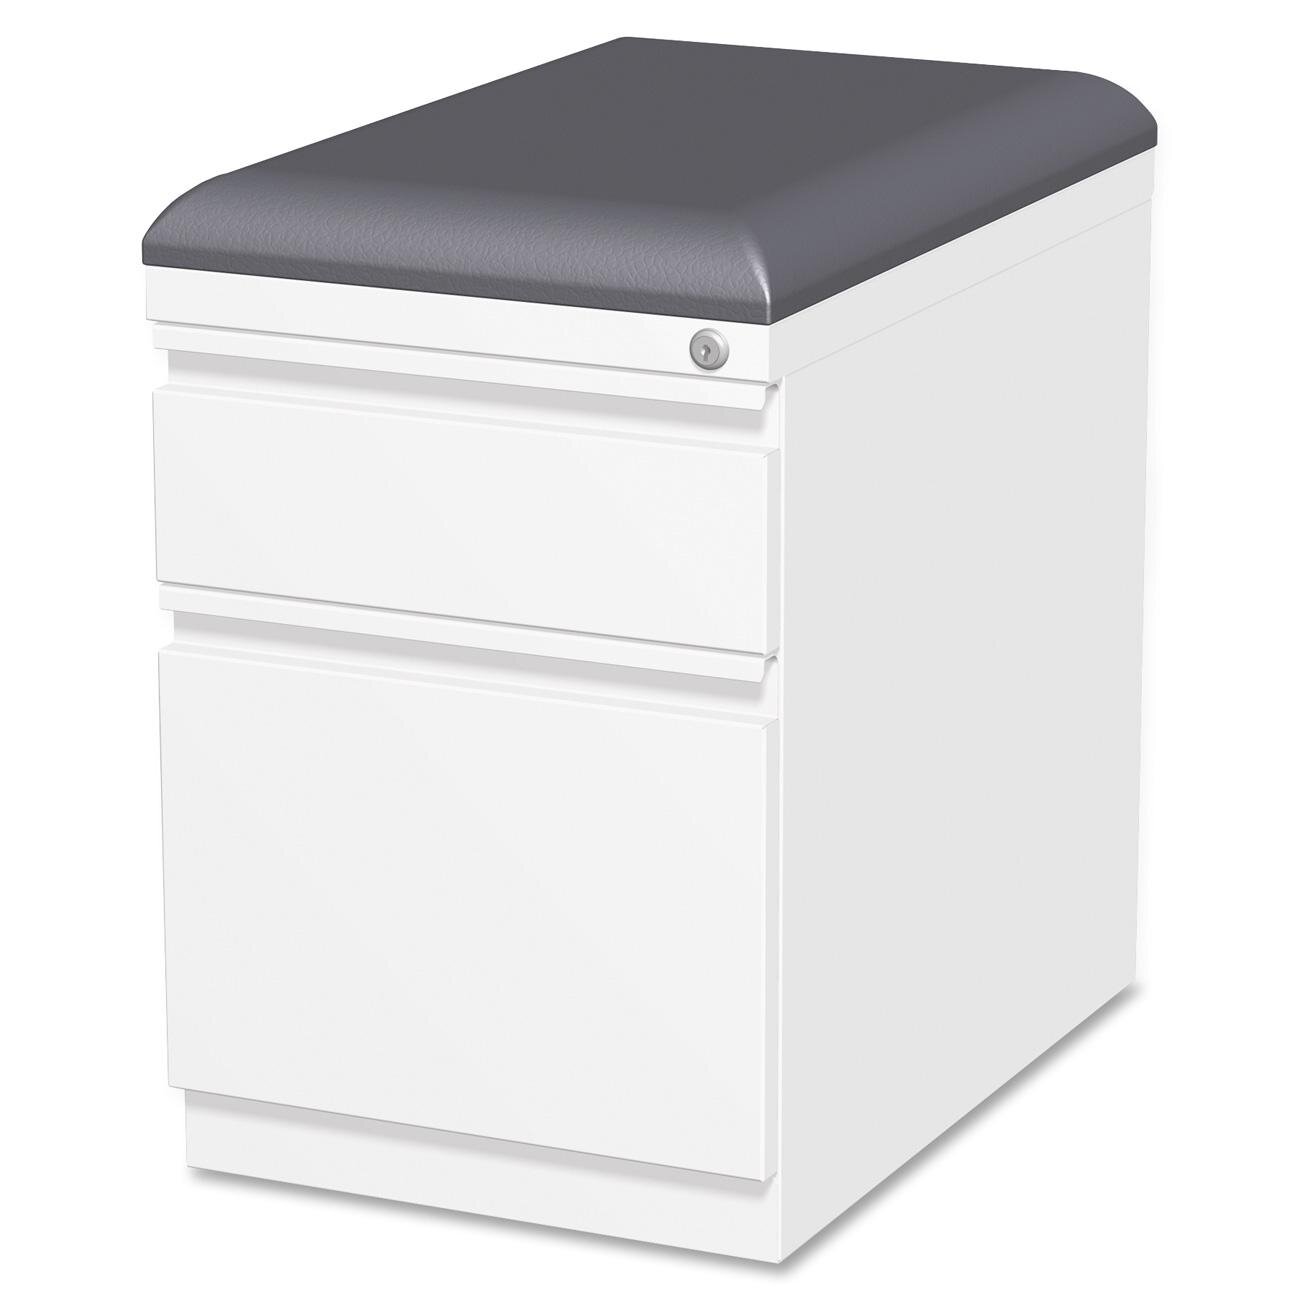 Lorell Cushion Seat Storage Mobile Pedestal File & Reviews | Wayfair